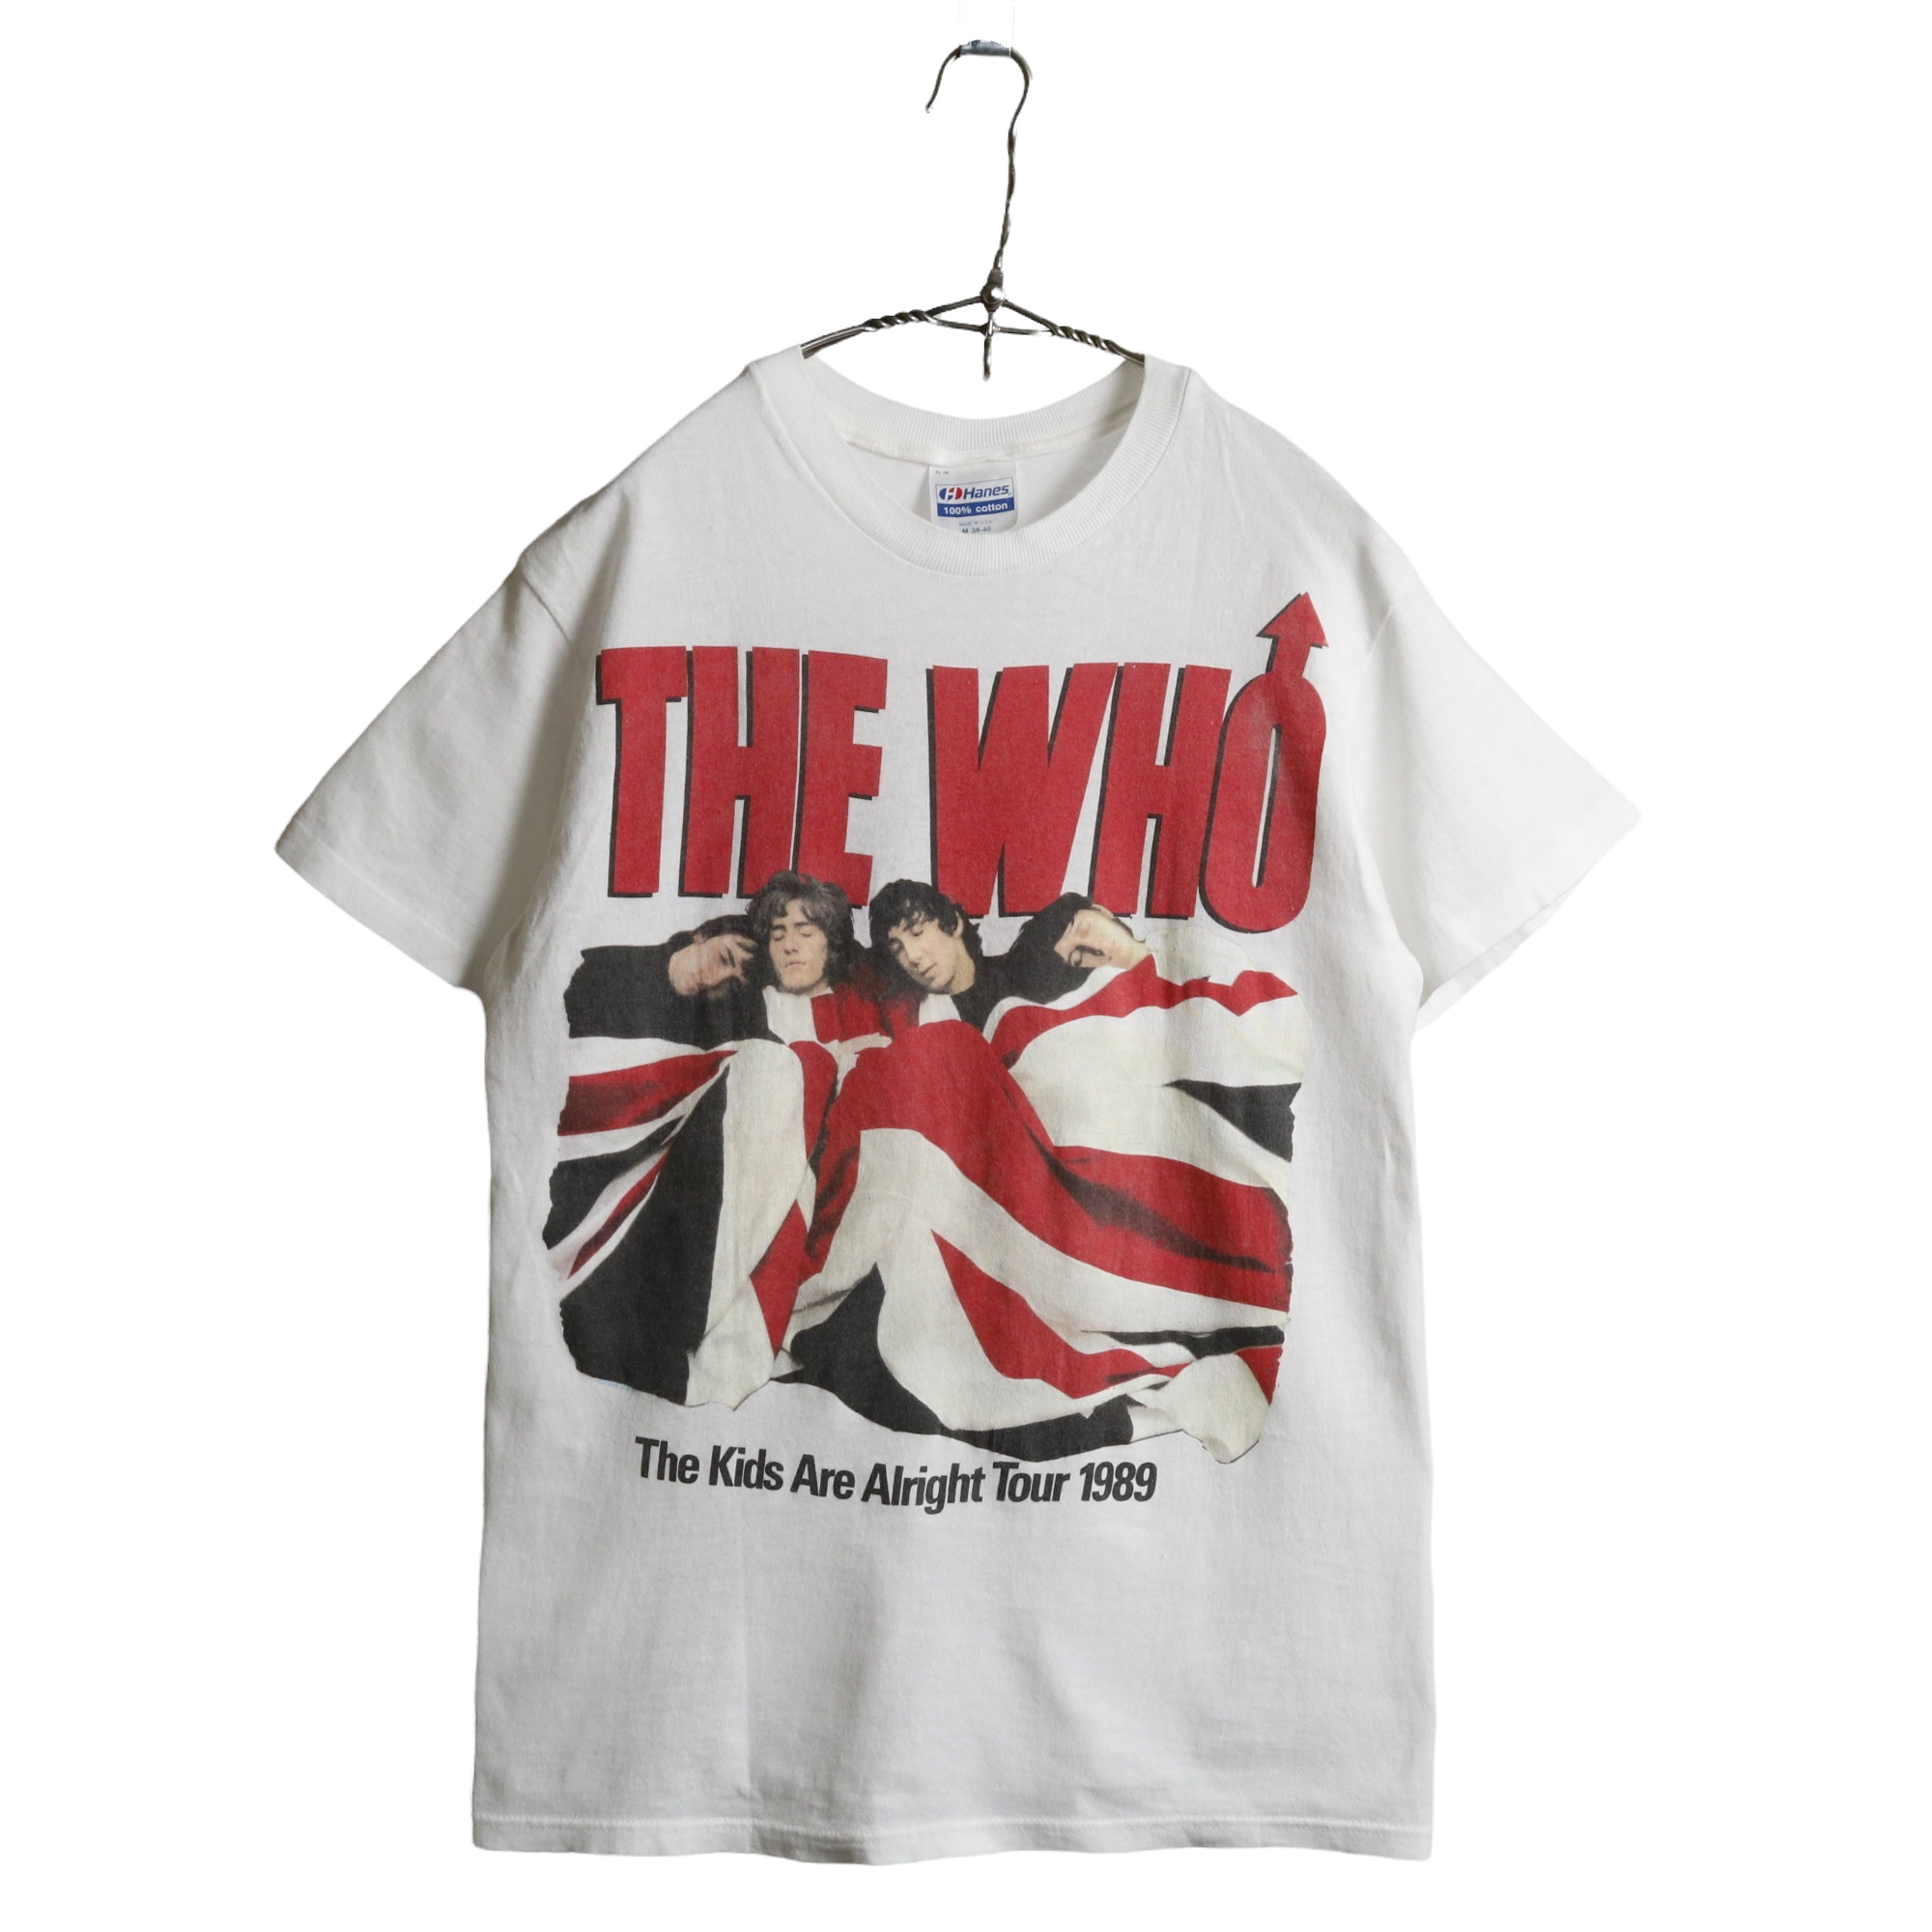 ACORN VINTAGE CLOTHING ONLINE | ヴィンテージ古着屋の通販 / 80s ヴィンテージ THE WHO ザ・フー バンド Tシャツ バンT 白 ホワイト HANES M